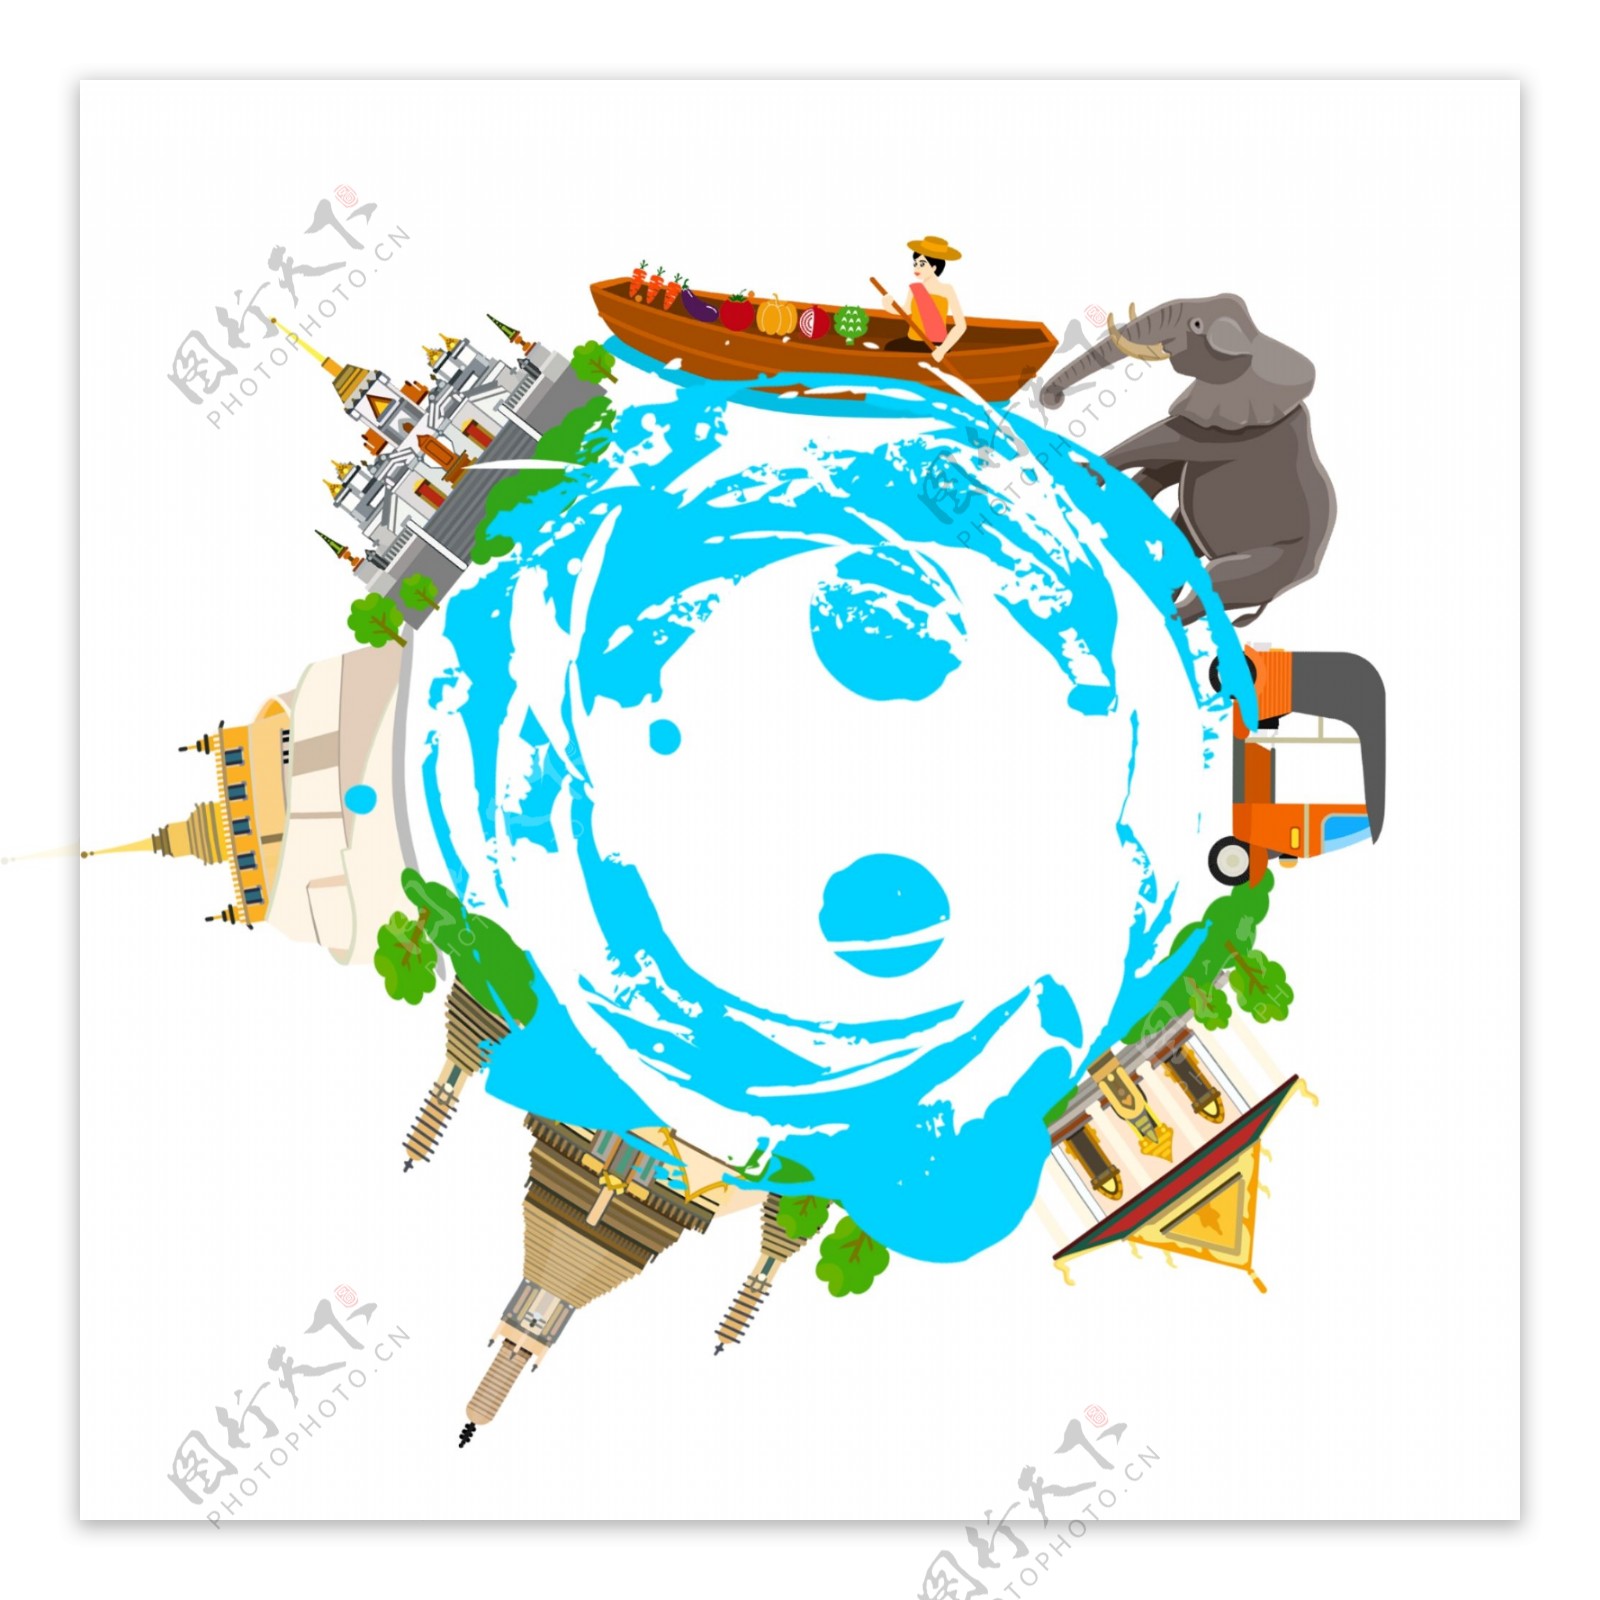 圆的世界形世界环球运输持星空联盟环游世界